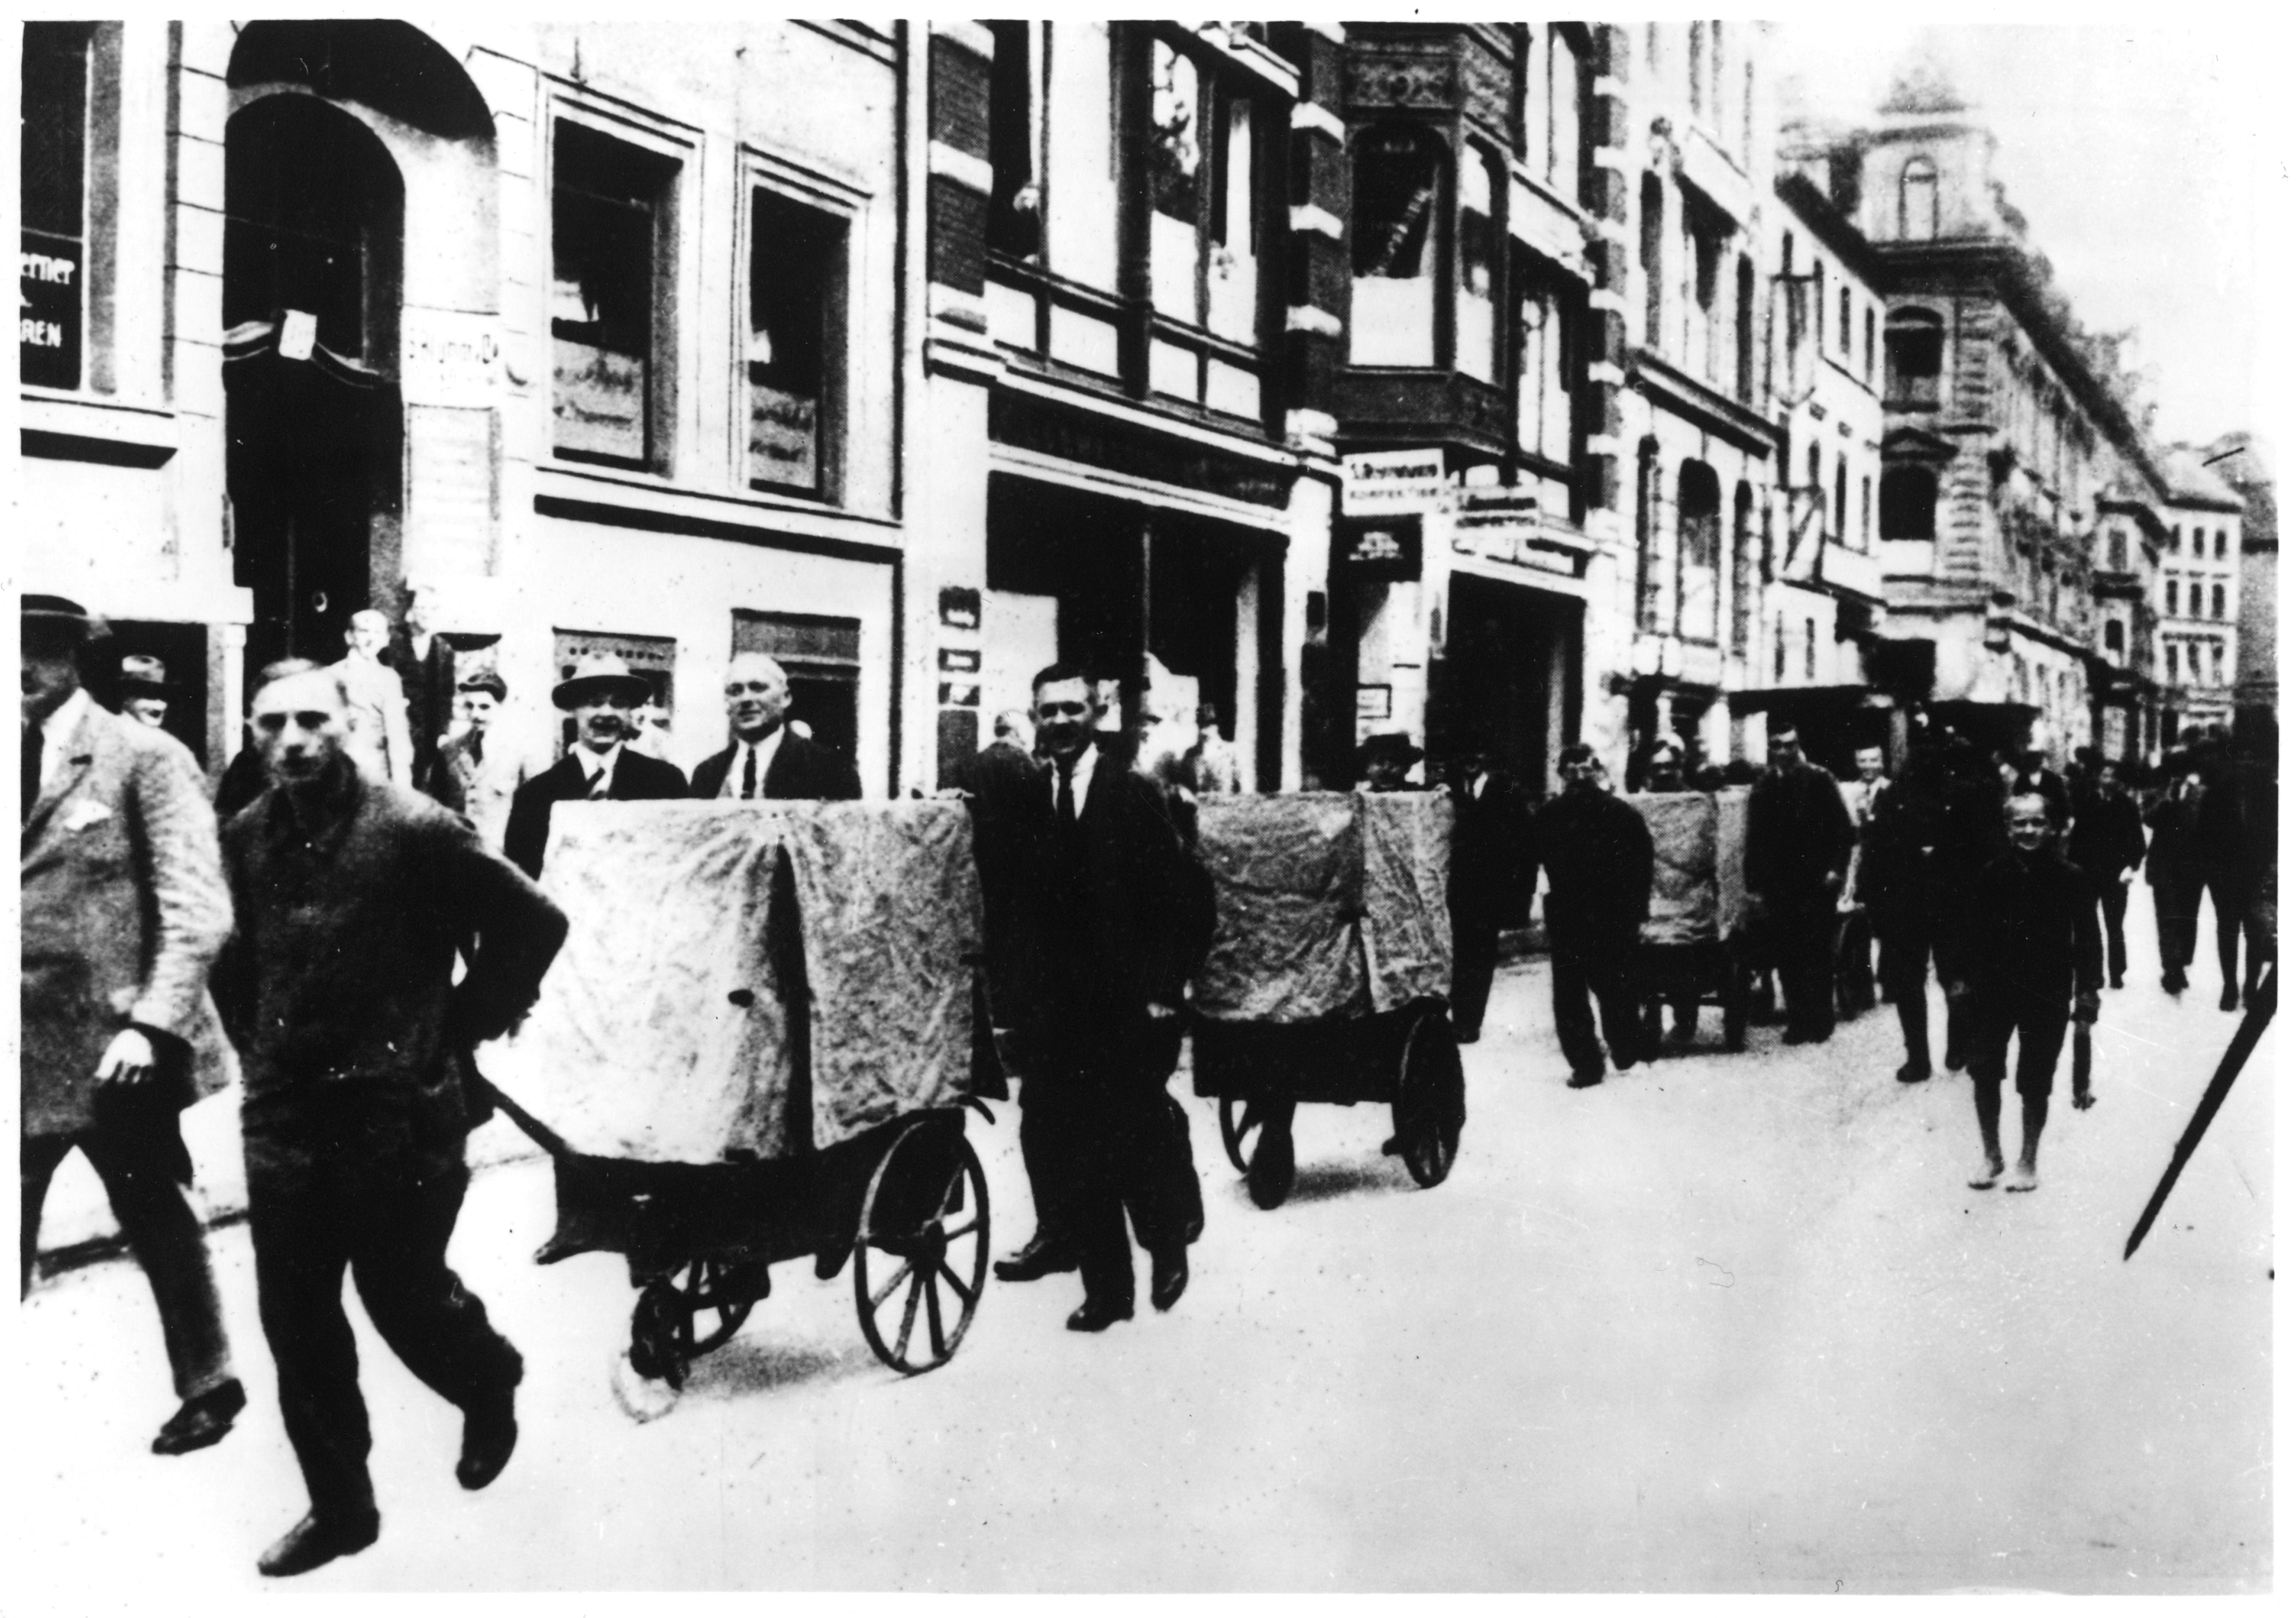 Exponat: Foto: Geldtransport für Lohnauszahlung, 1923